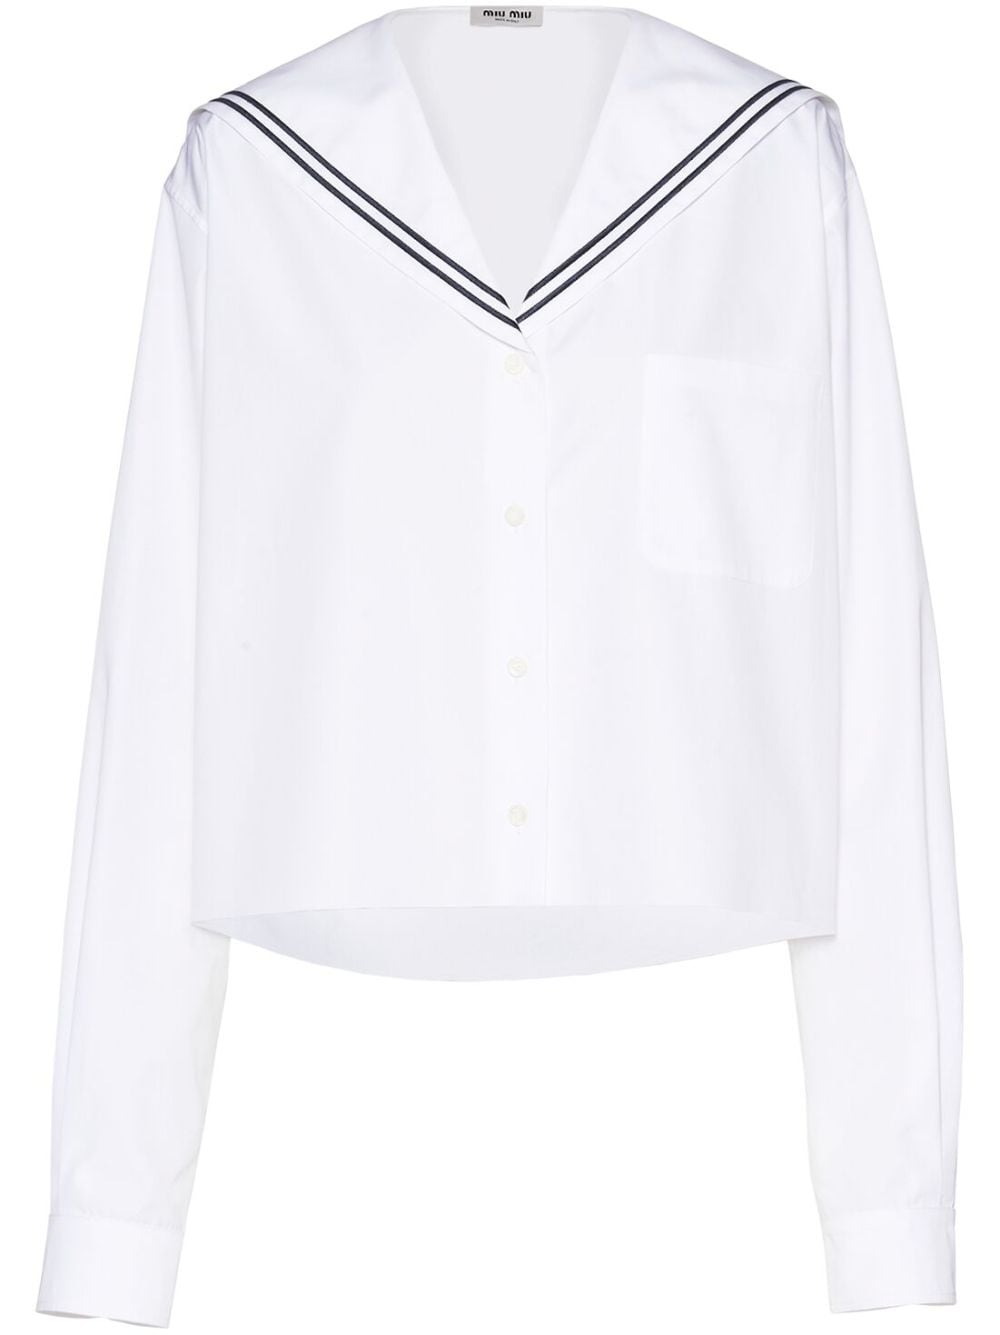 sailor poplin shirt